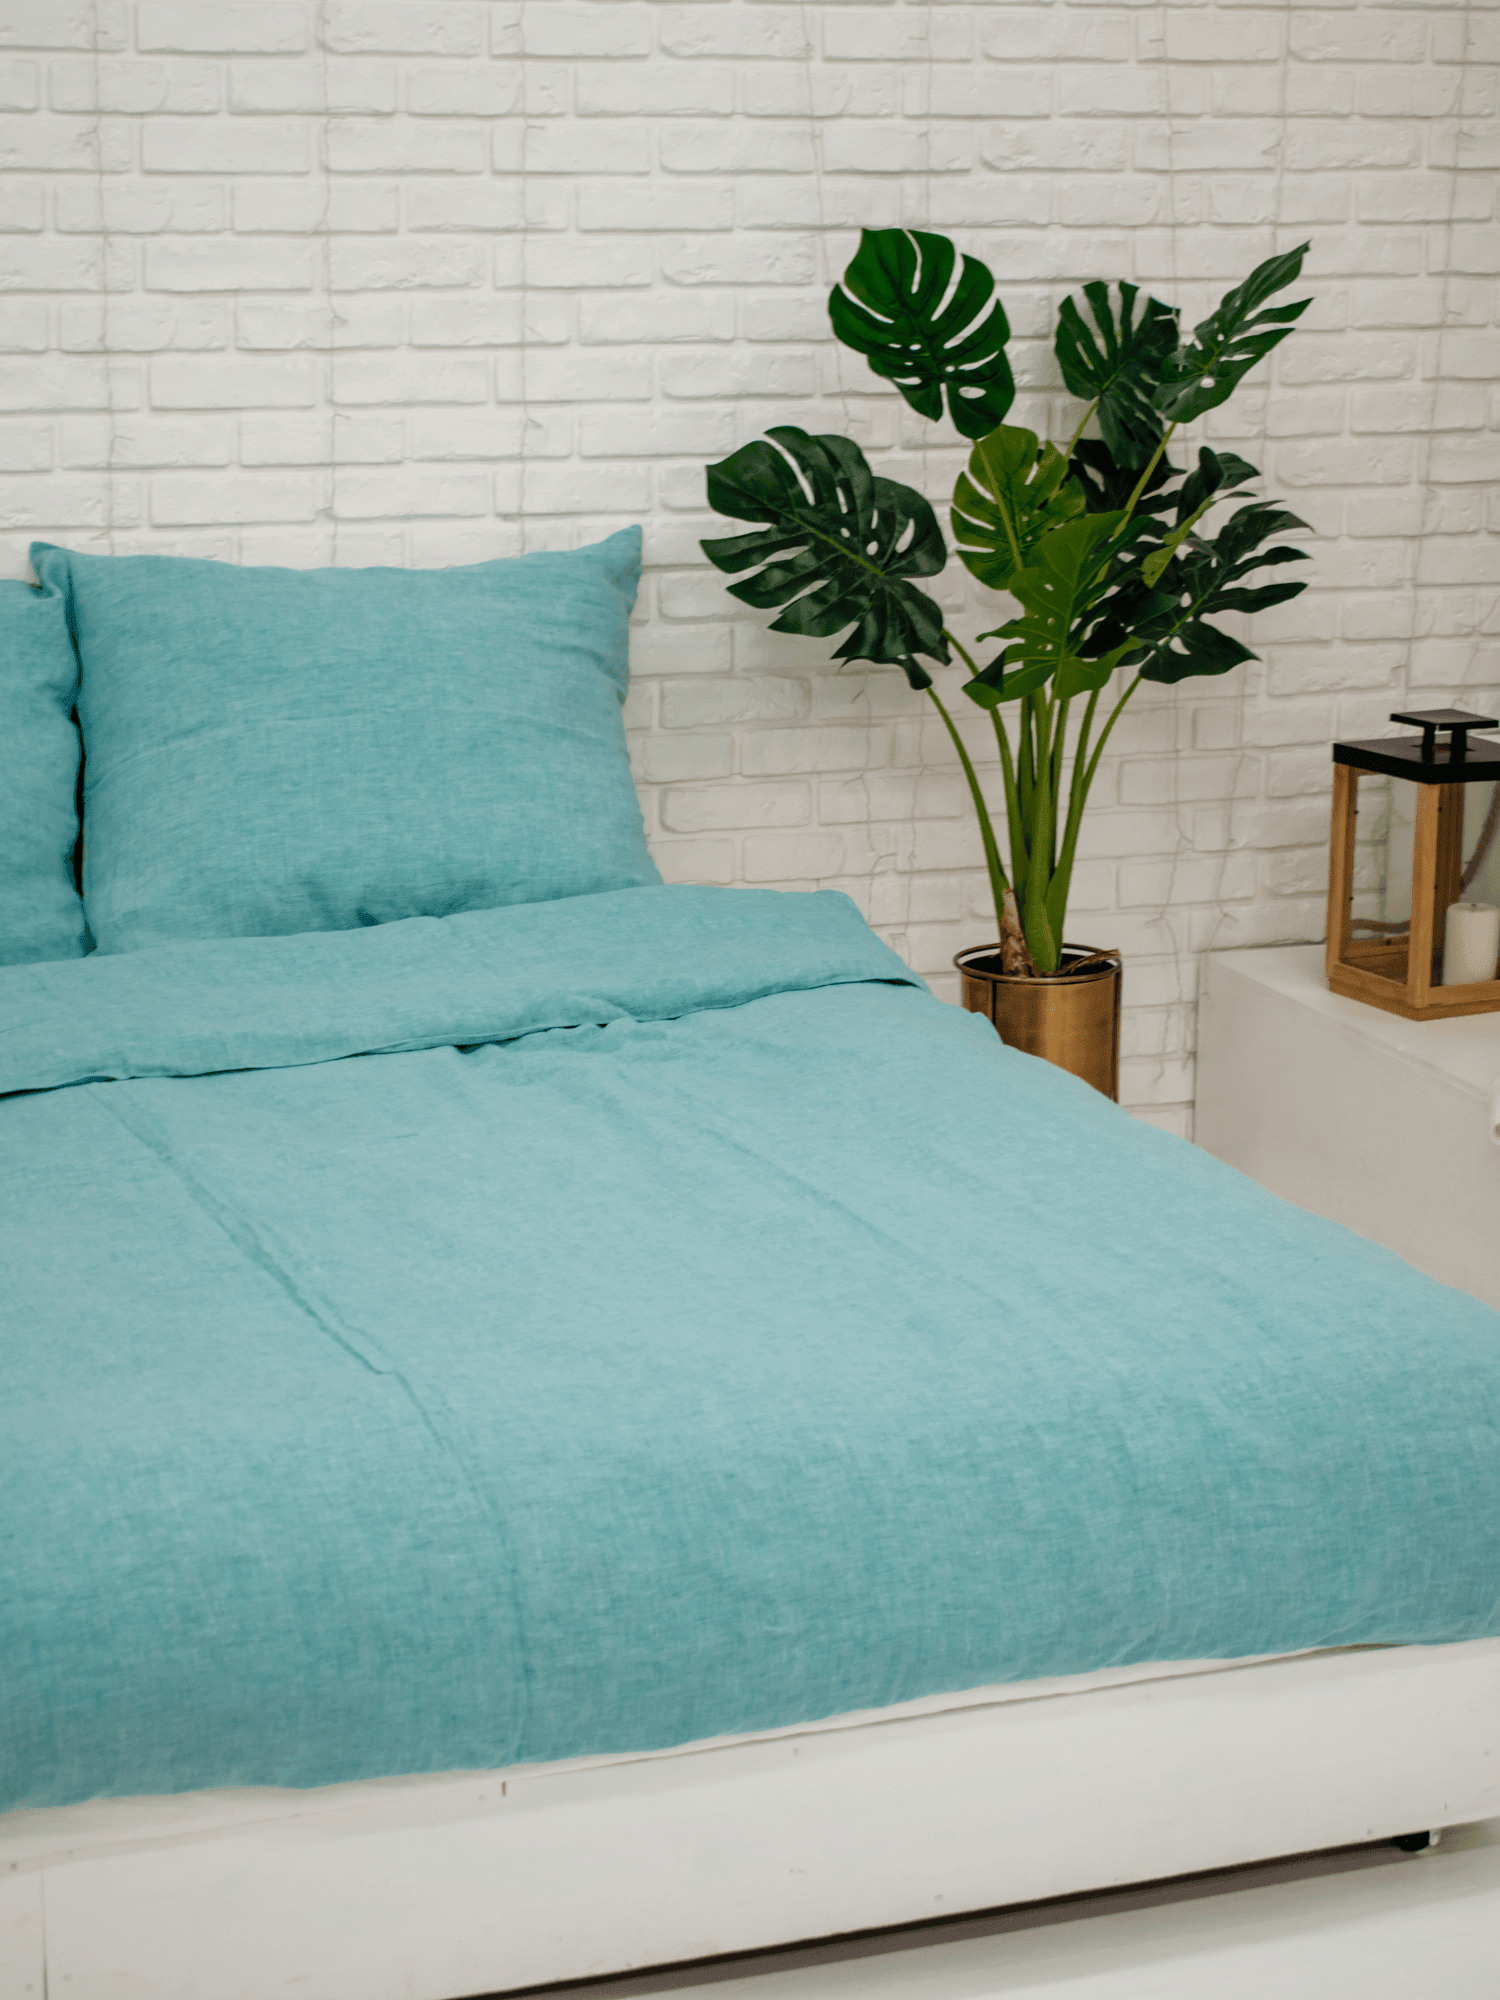 Green Melange Soft Linen Bedding Set (The set includes 4 items of green melange color) - Bedroom, Linen bedding set - FlaxLin Eco Textiles